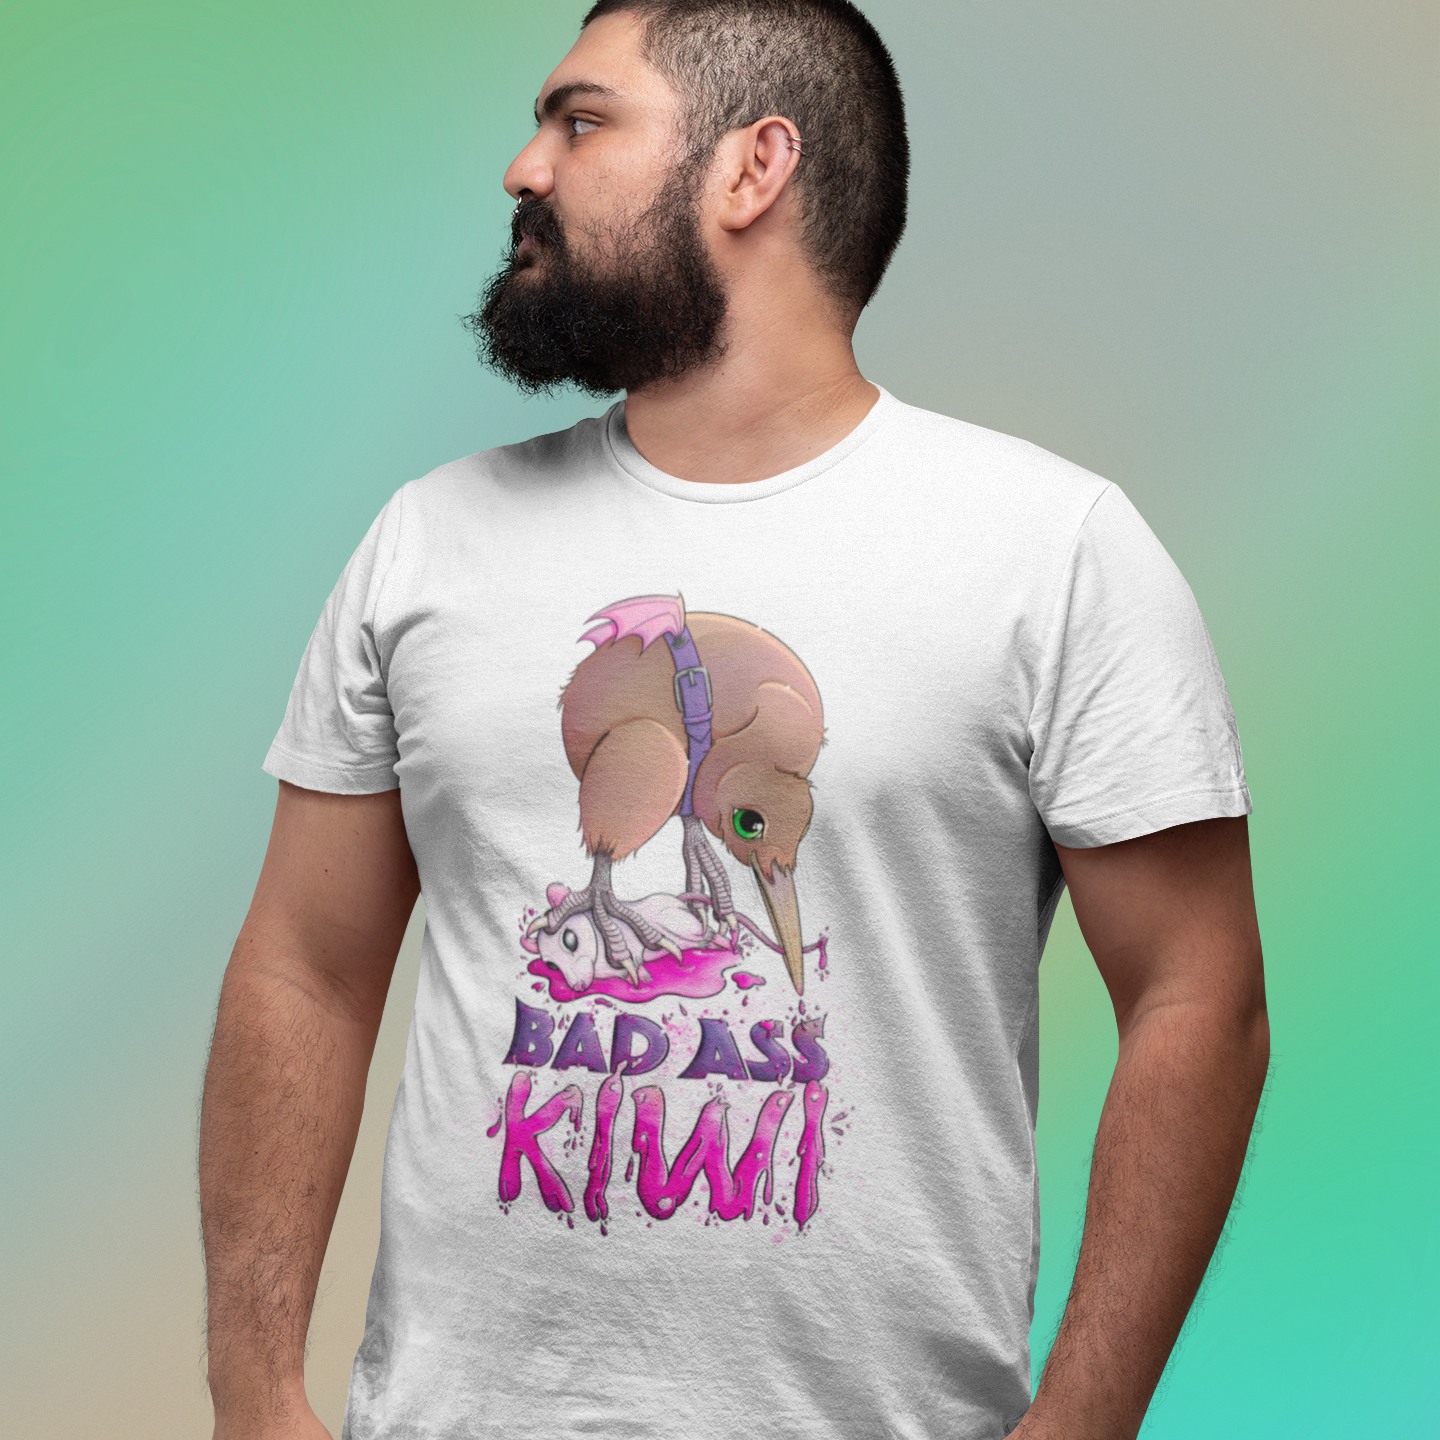 Bad Ass Kiwi Tee